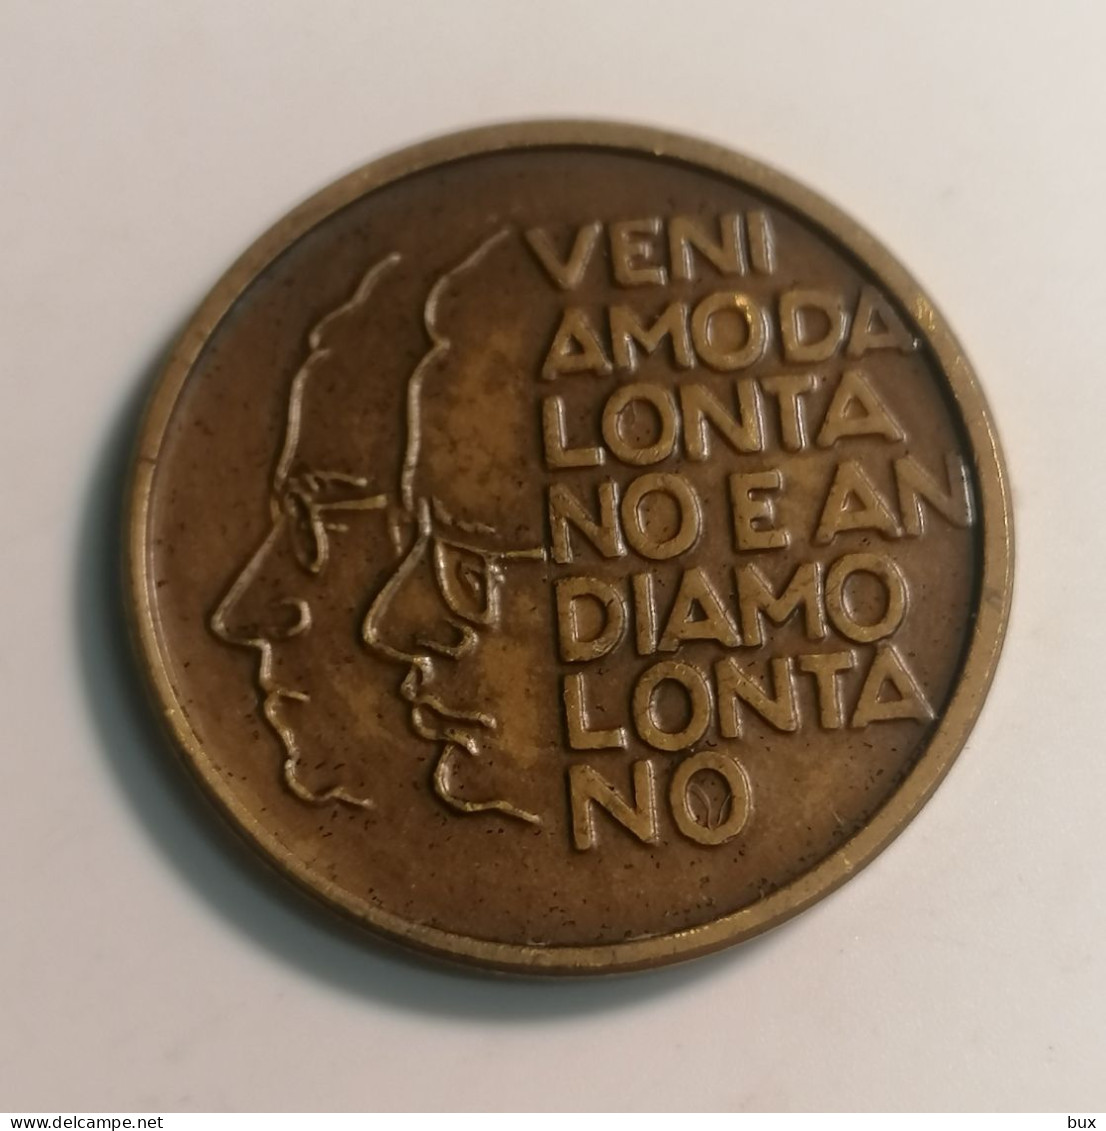 Medaglia 50 Anniversario Fondazione Del Partito Comunista Italiano 1921-1971 Medaglia Medal - Professionals/Firms